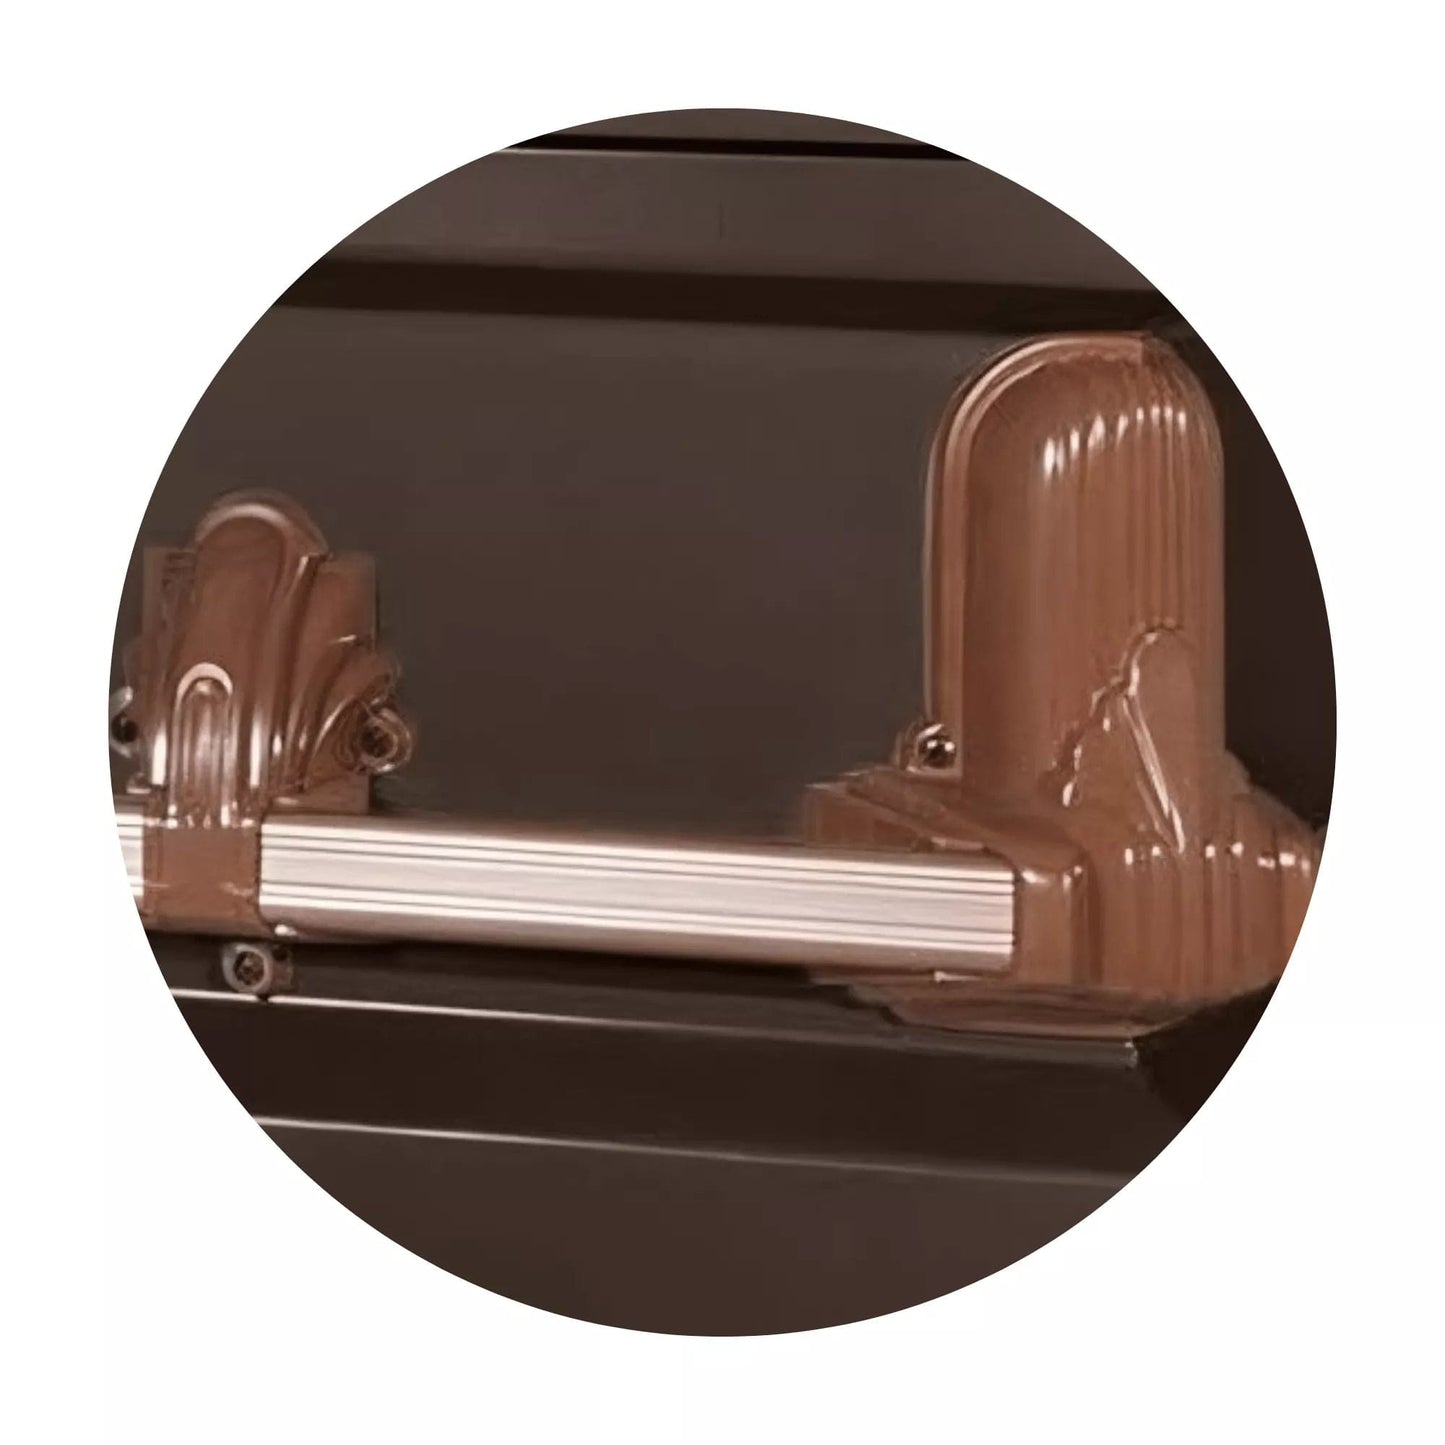 Andover Series | Bronze Steel Casket with Rosetan Interior